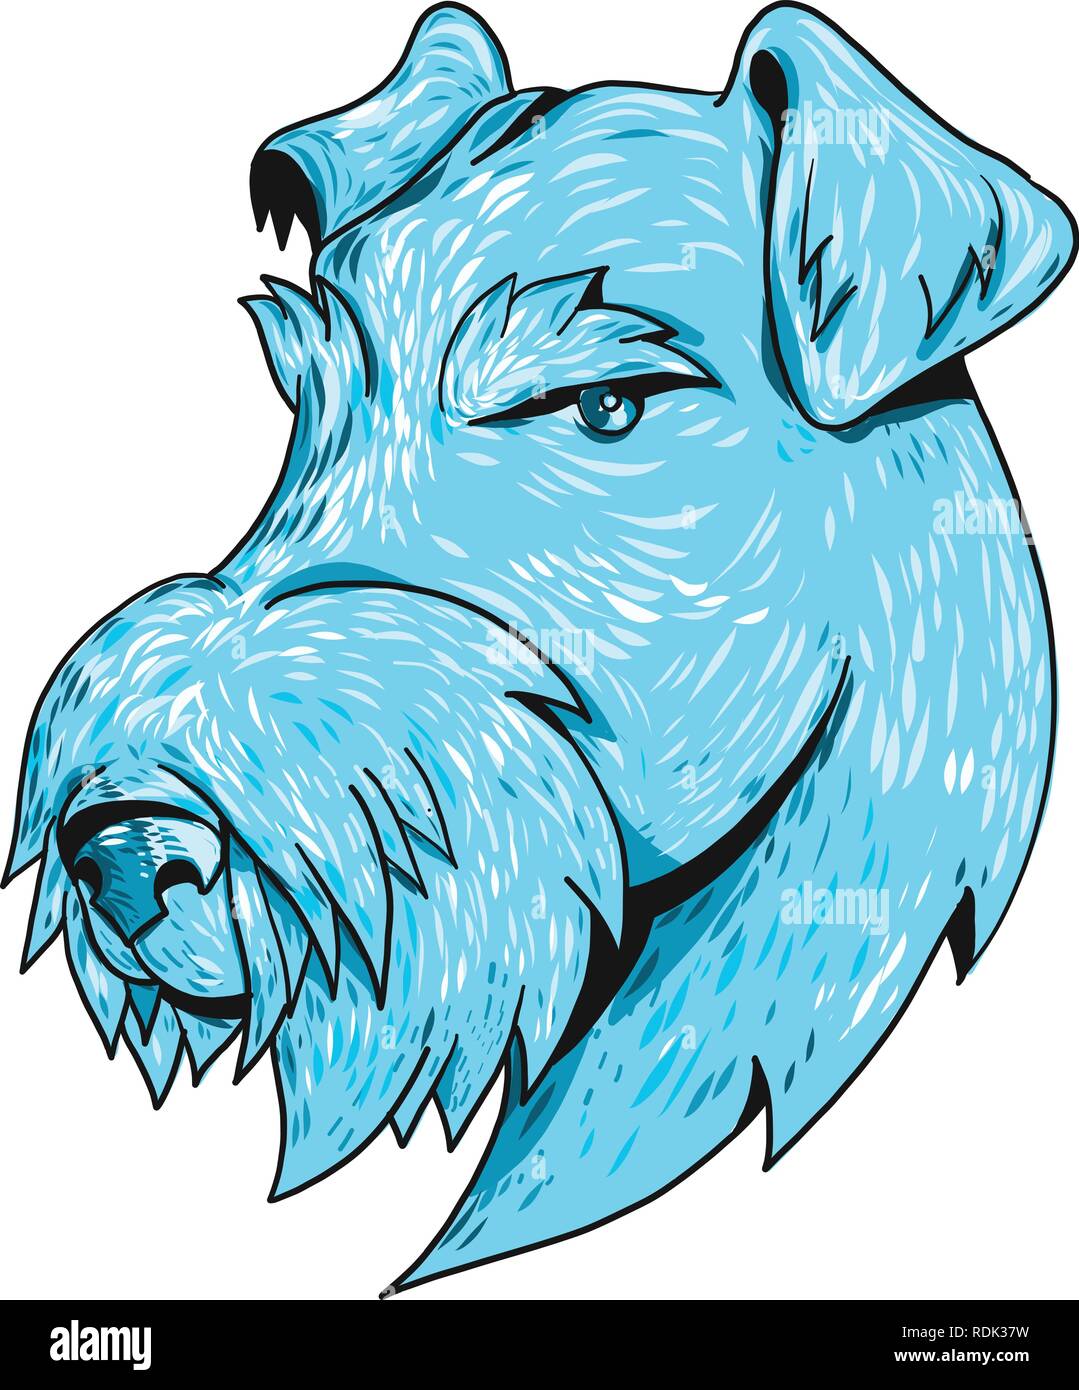 Croquis dessin illustration style général d'un Airedale Terrier, Terrier ou Terrier au bord de Bingley, le plus grand de tous les terriers aussi connu sous le ÒKin Illustration de Vecteur